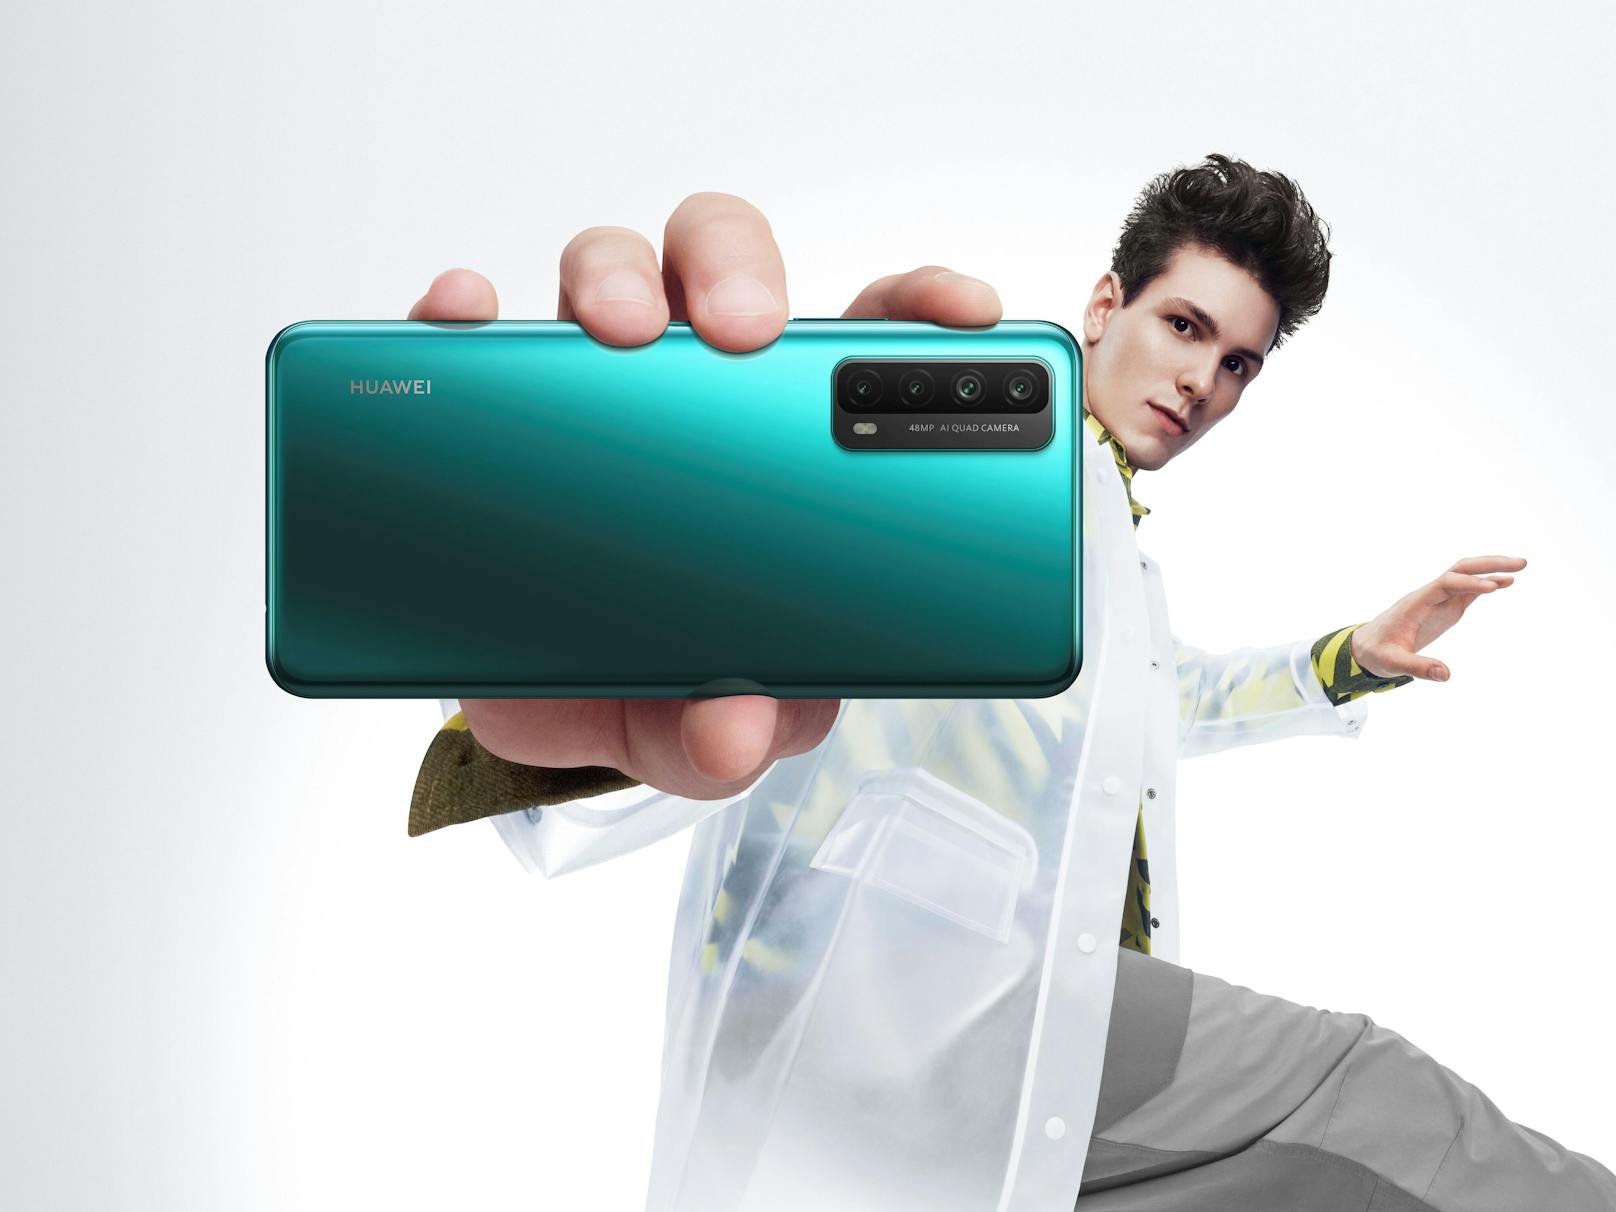 Nach der globalen Vorstellung neuer Huawei-Geräte hat Huawei in Österreich überraschend ein neues Smartphone vorgestellt.